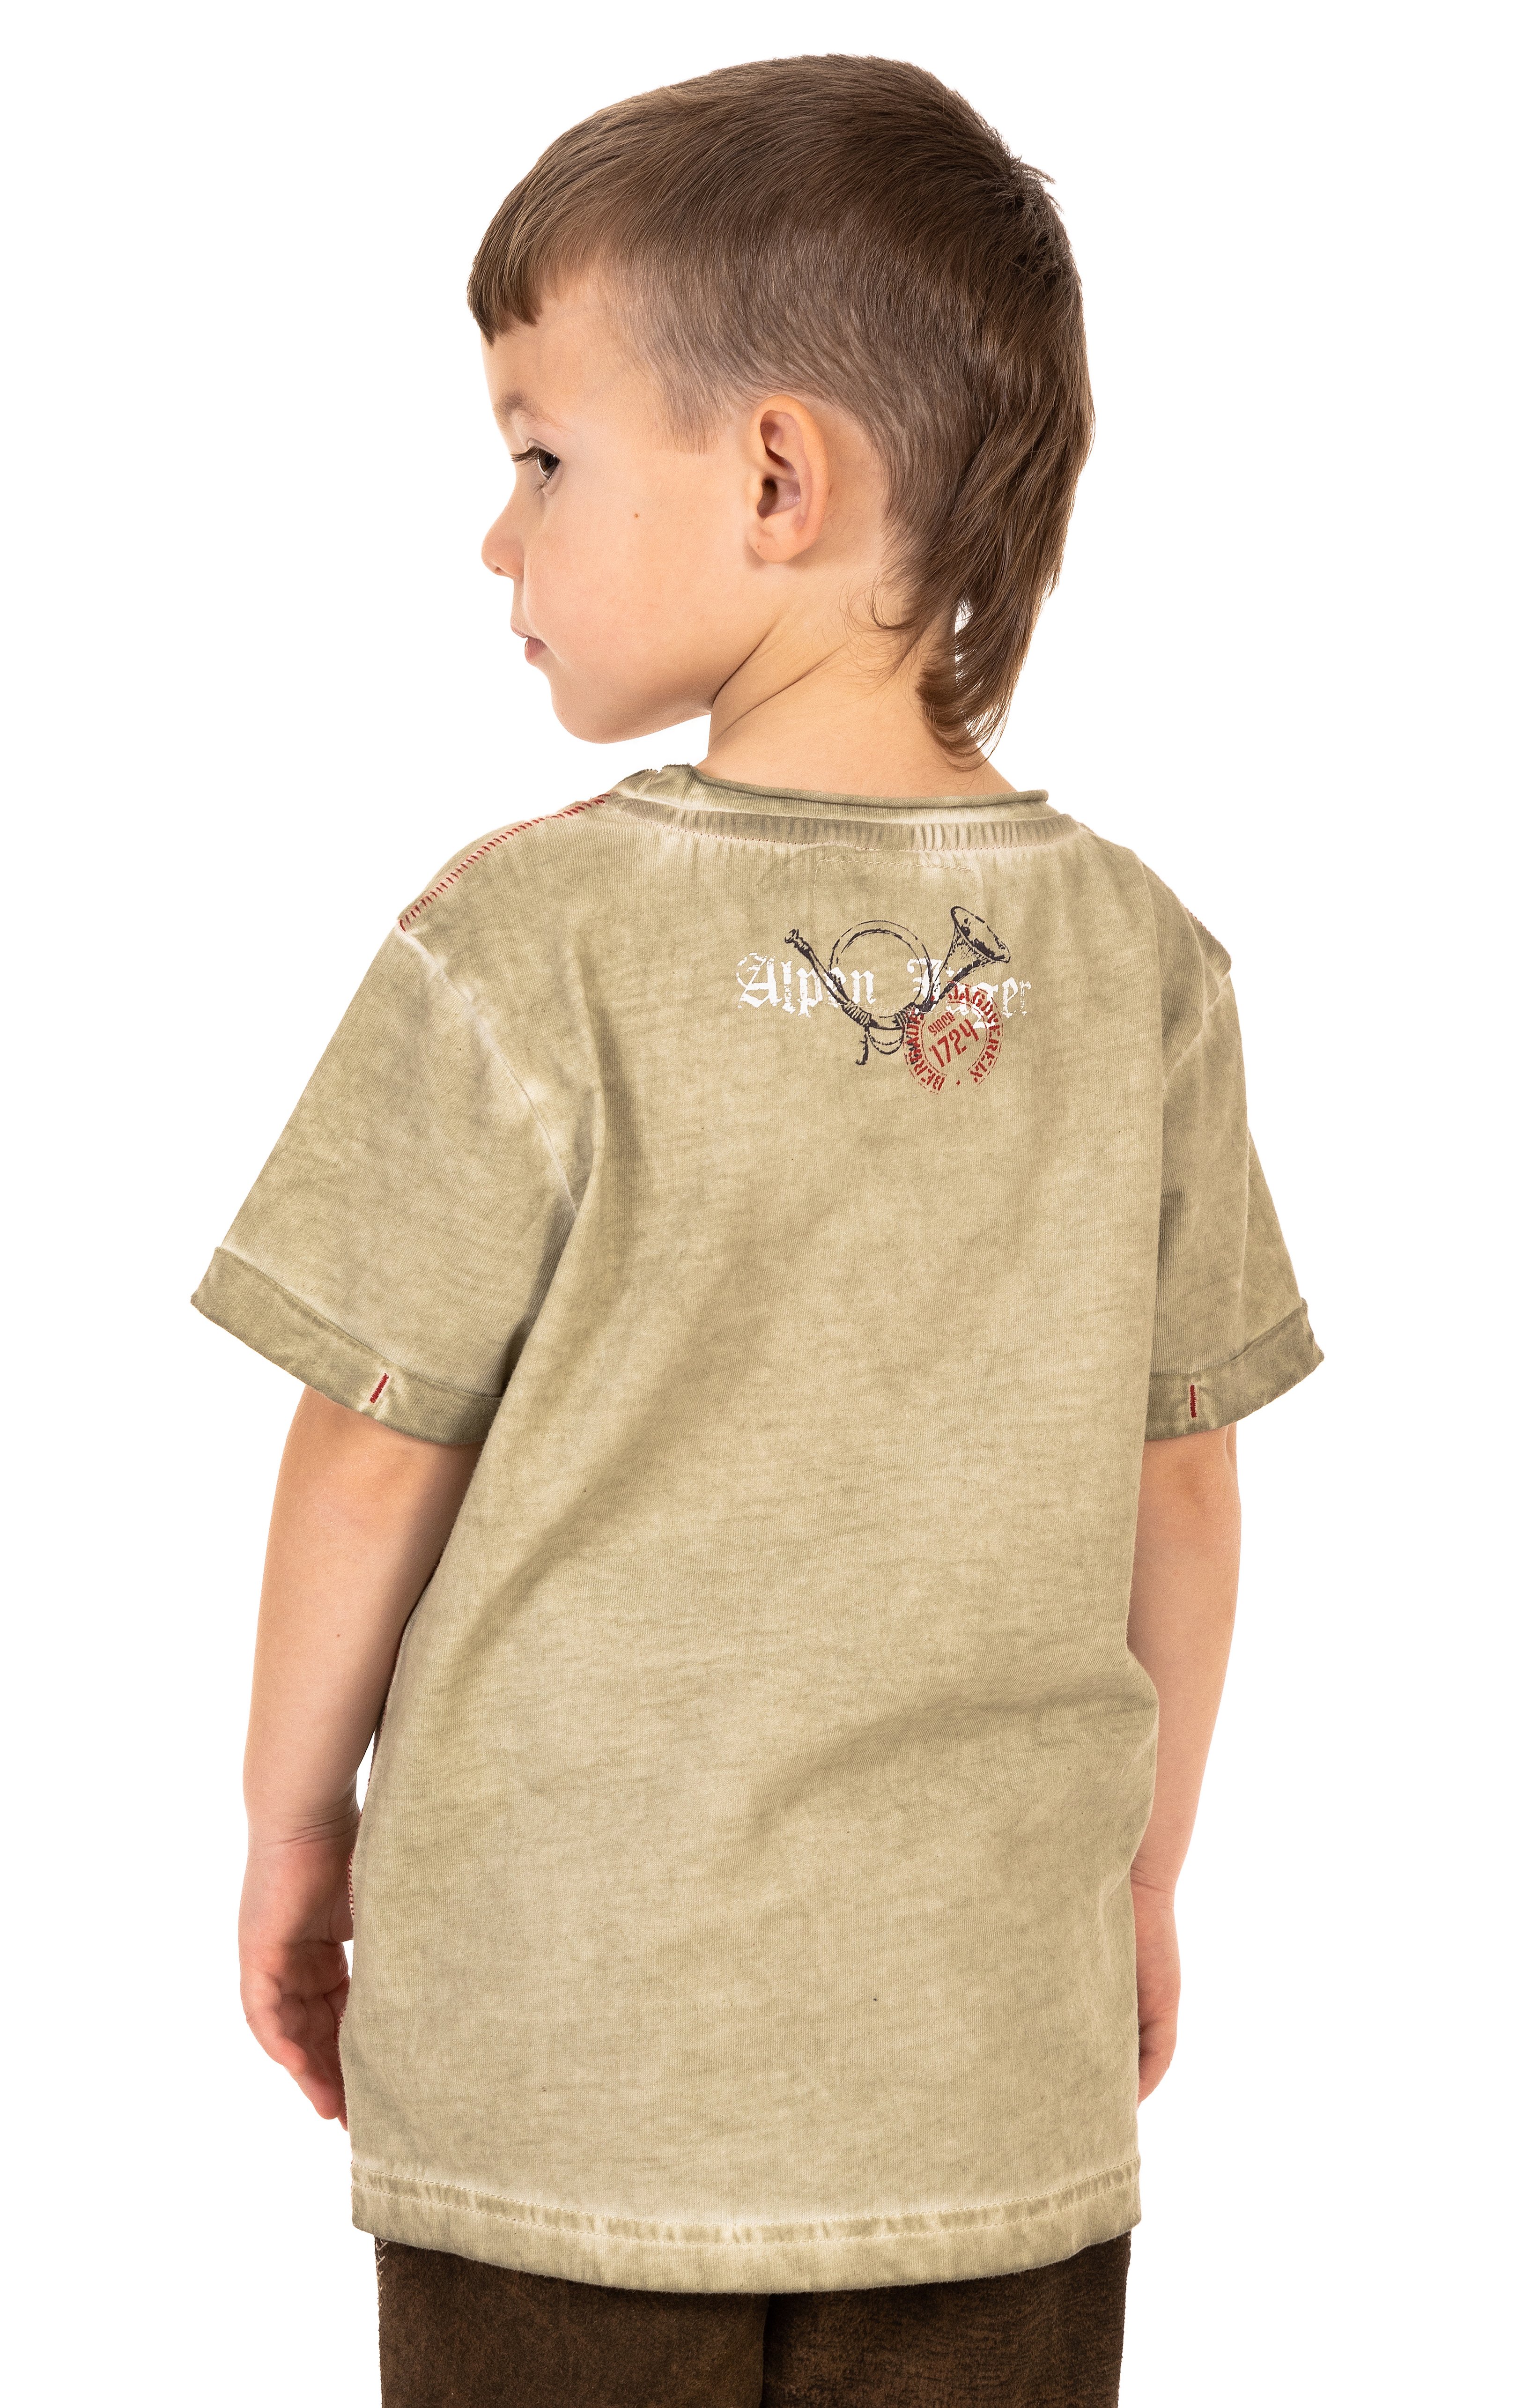 weitere Bilder von Kinderen tiroler overhemd M04 JAGDLIED KIDS beige